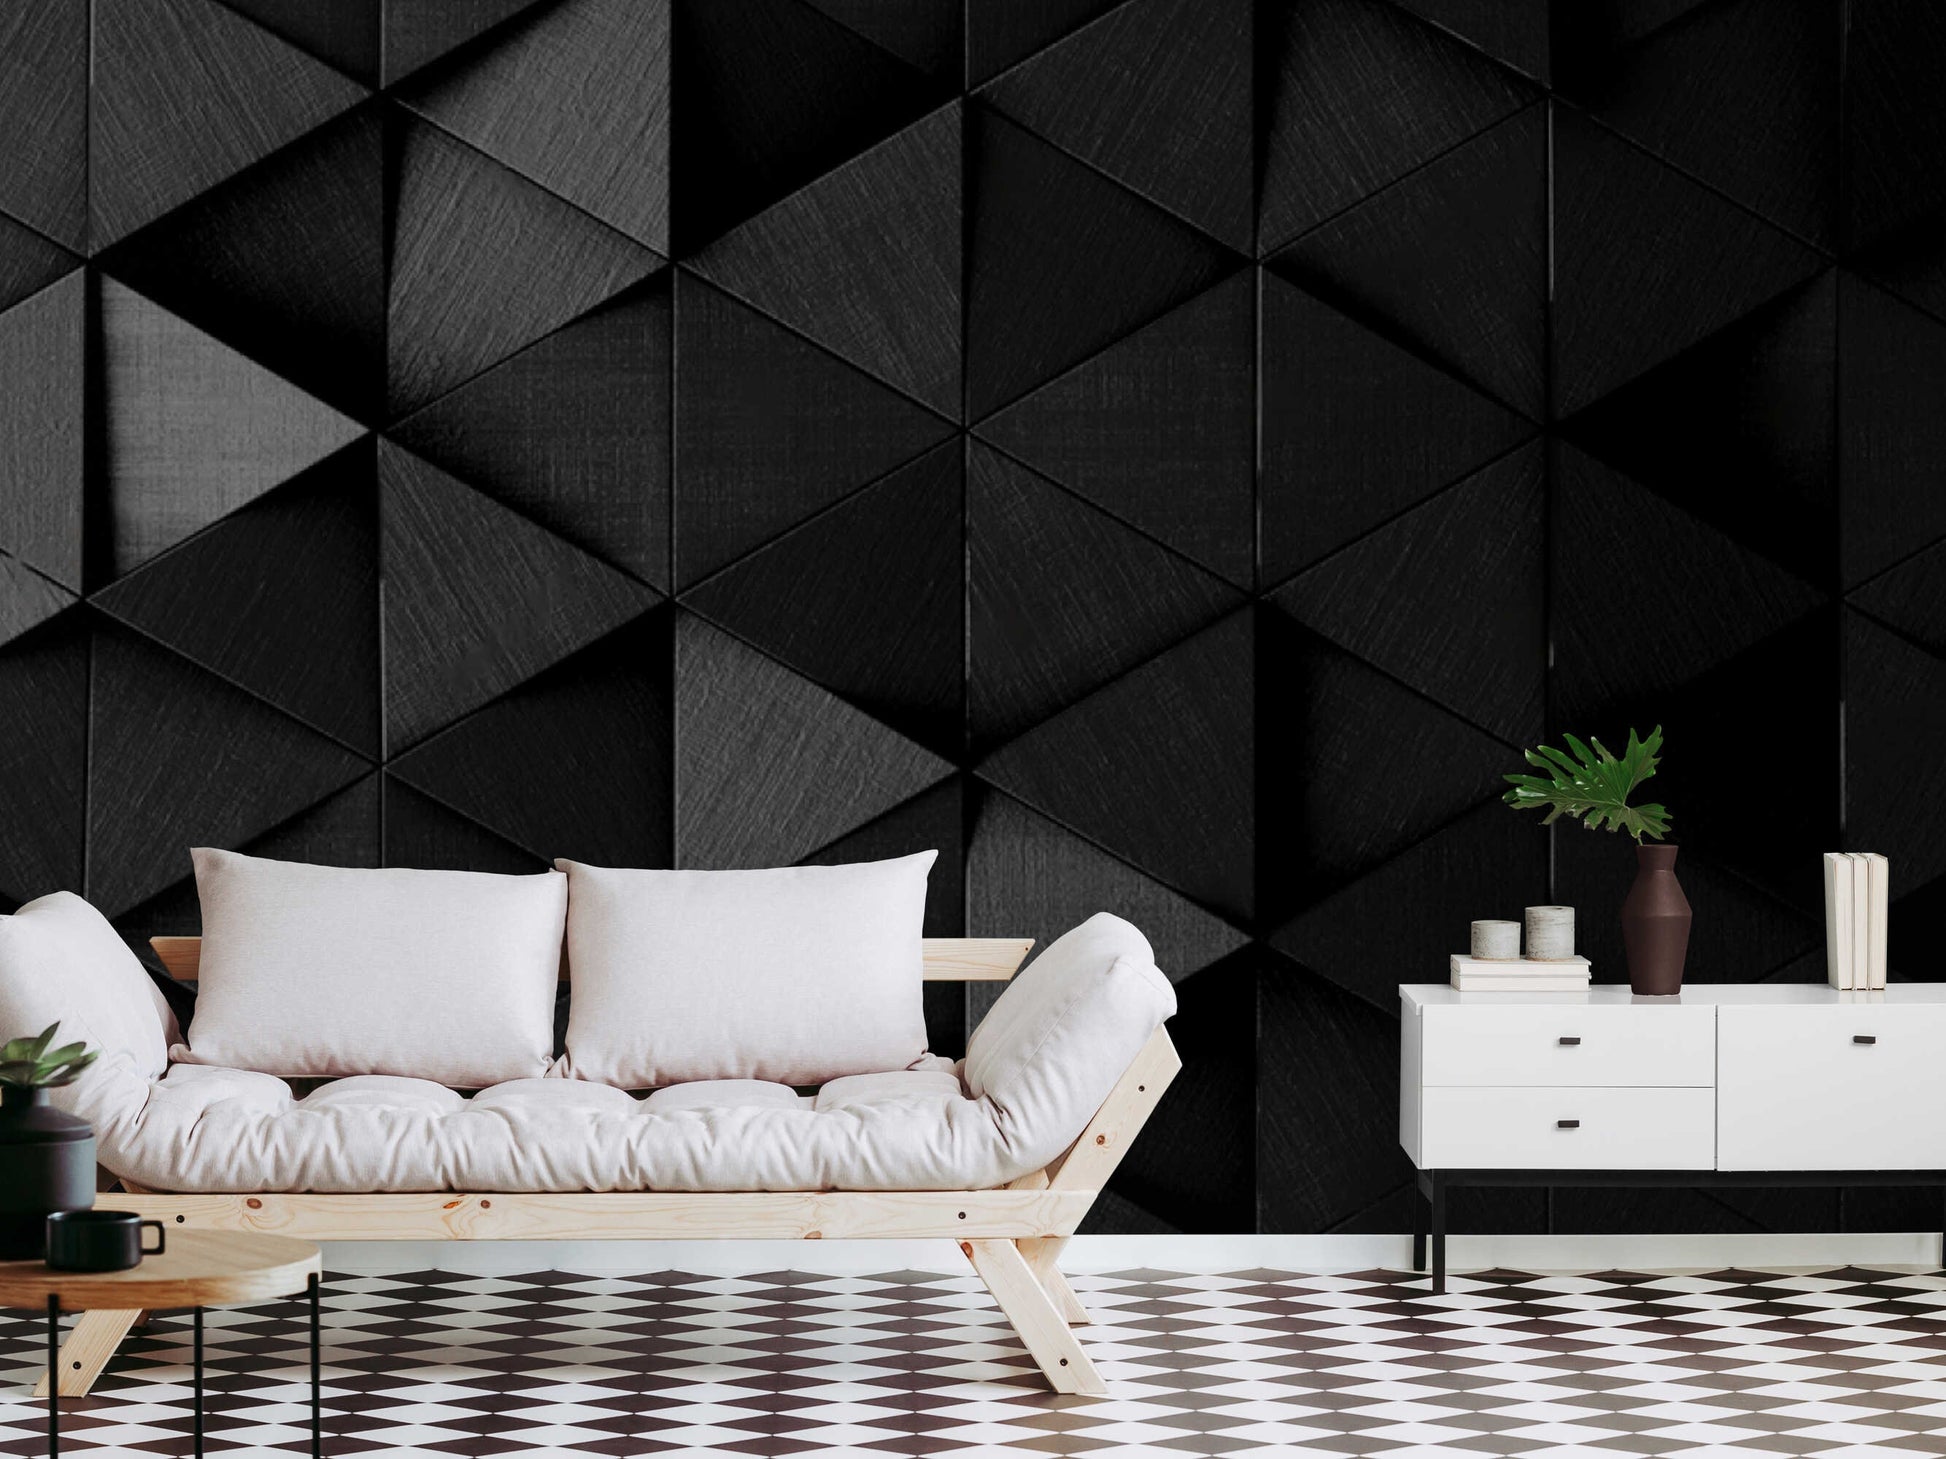 Contemporary modern wall decor in a dark interior setting